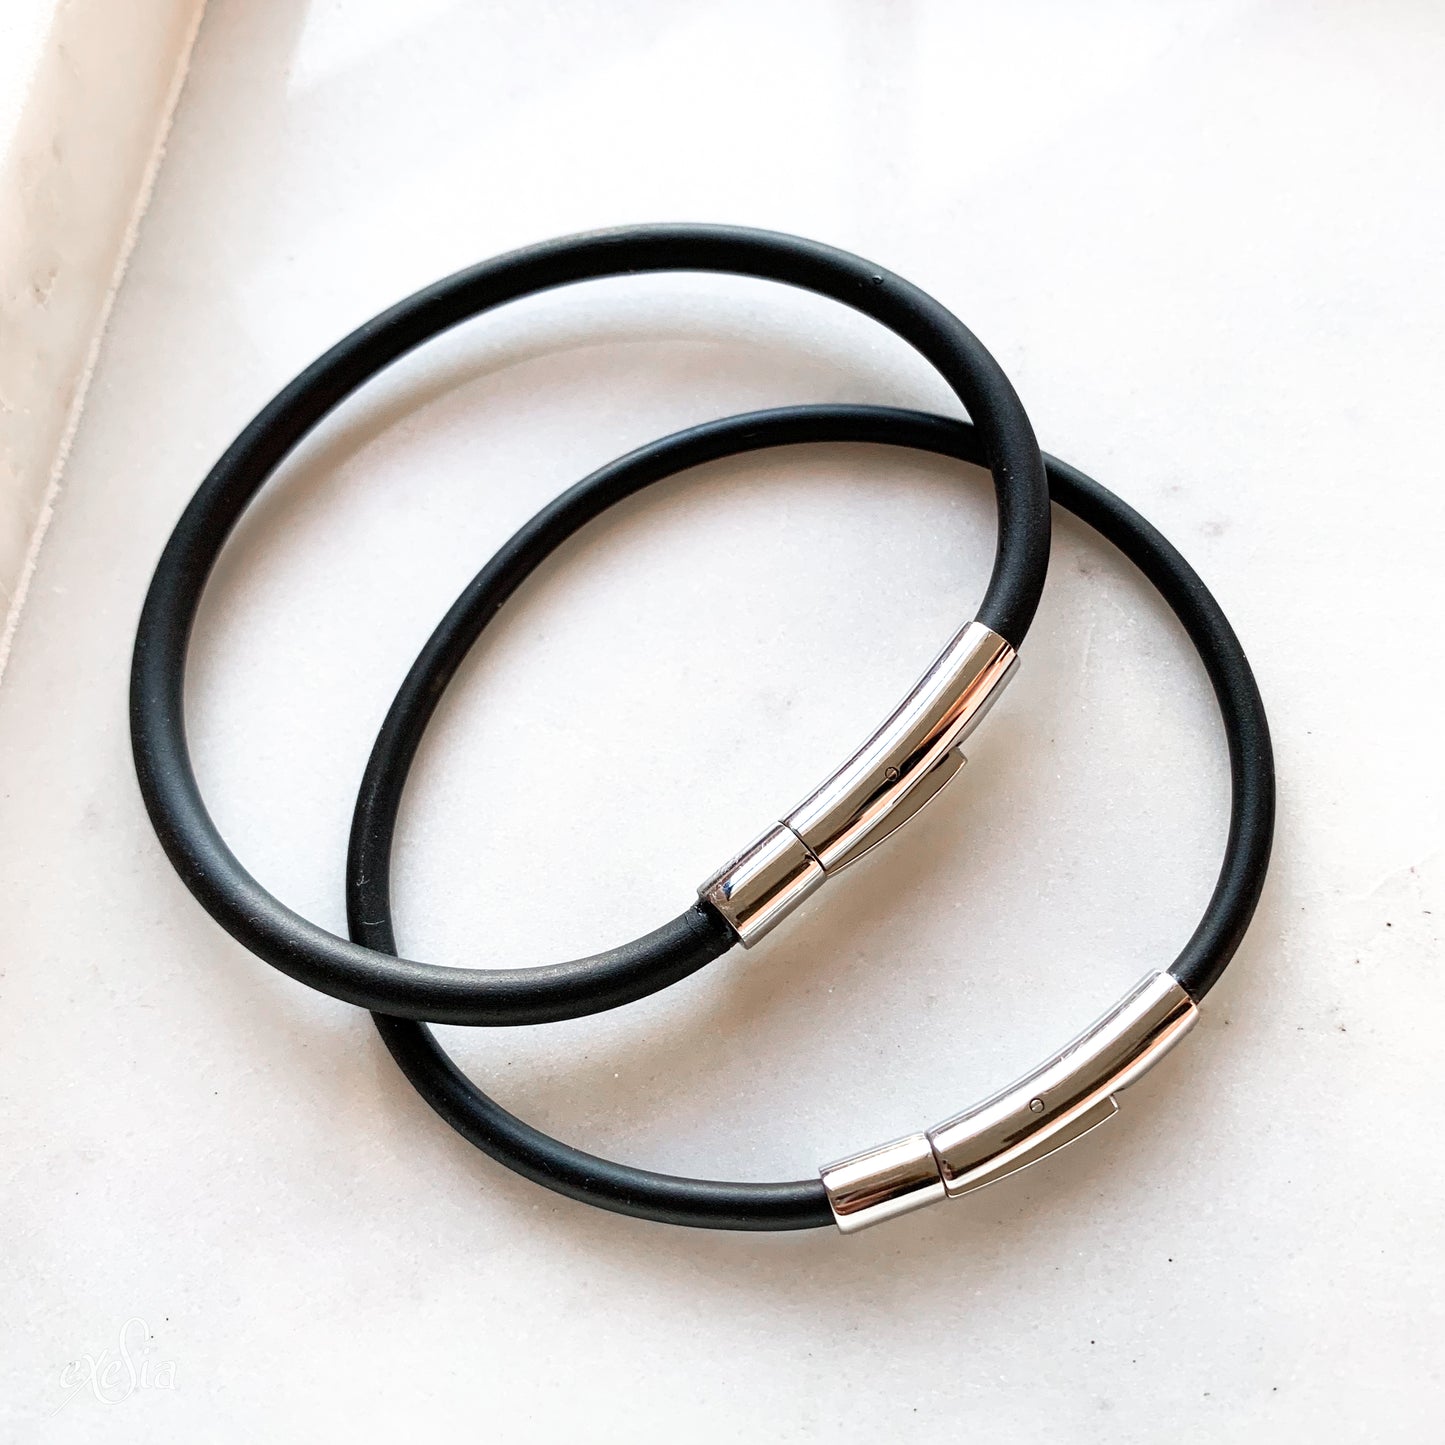 Leather / PVC Bracelet